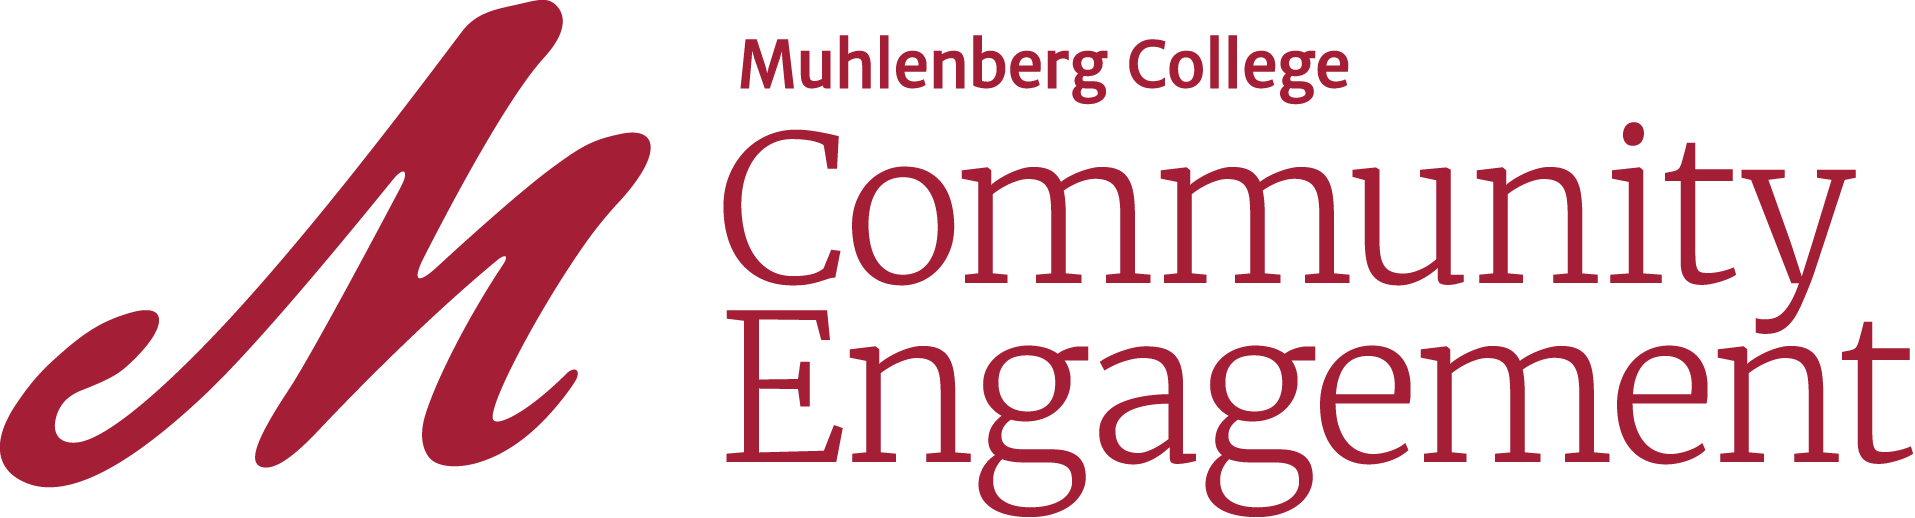 community engagement logo 